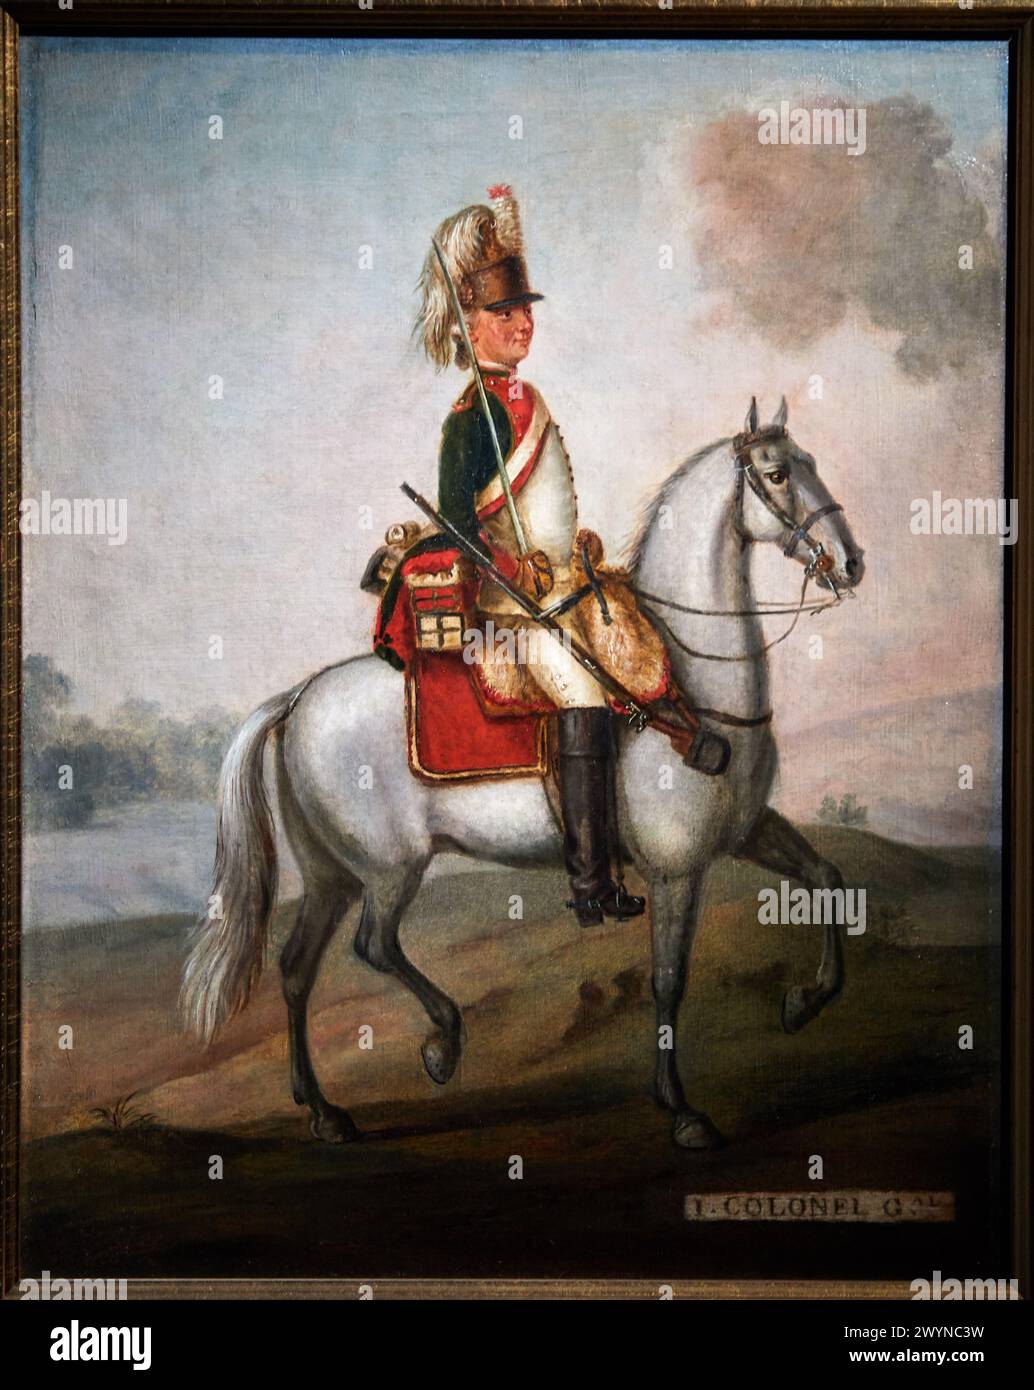 Ein Dragoner aus der ersten Kompanie des Oberst-Général-Regiments, 2. Hälfte des 18. Jahrhunderts, Anonym, Musée de lArmée, Hôtel National des Invalides, Paris, Frankreich. Stockfoto